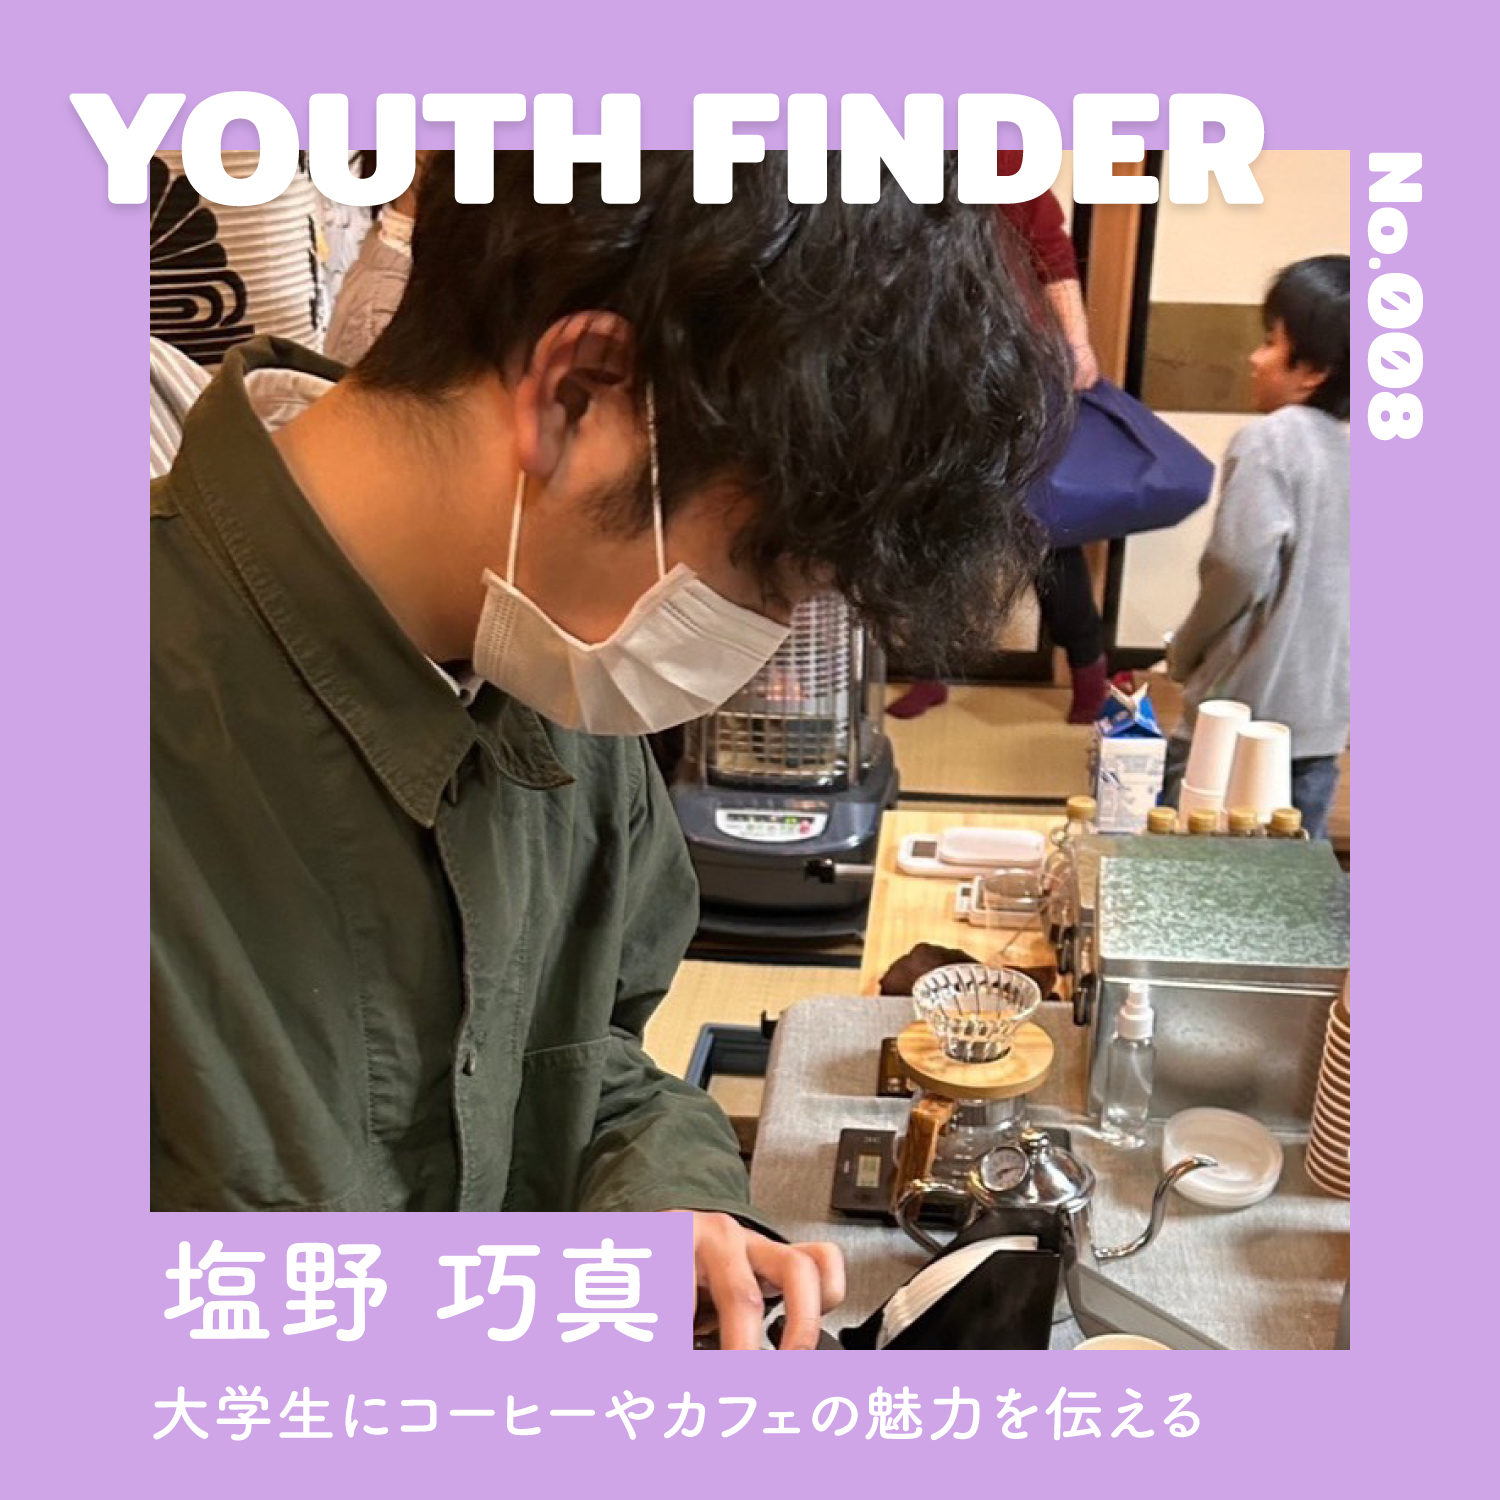 大学生にコーヒーやカフェの魅力を伝える 塩野巧真さん【Youth Finder】の画像